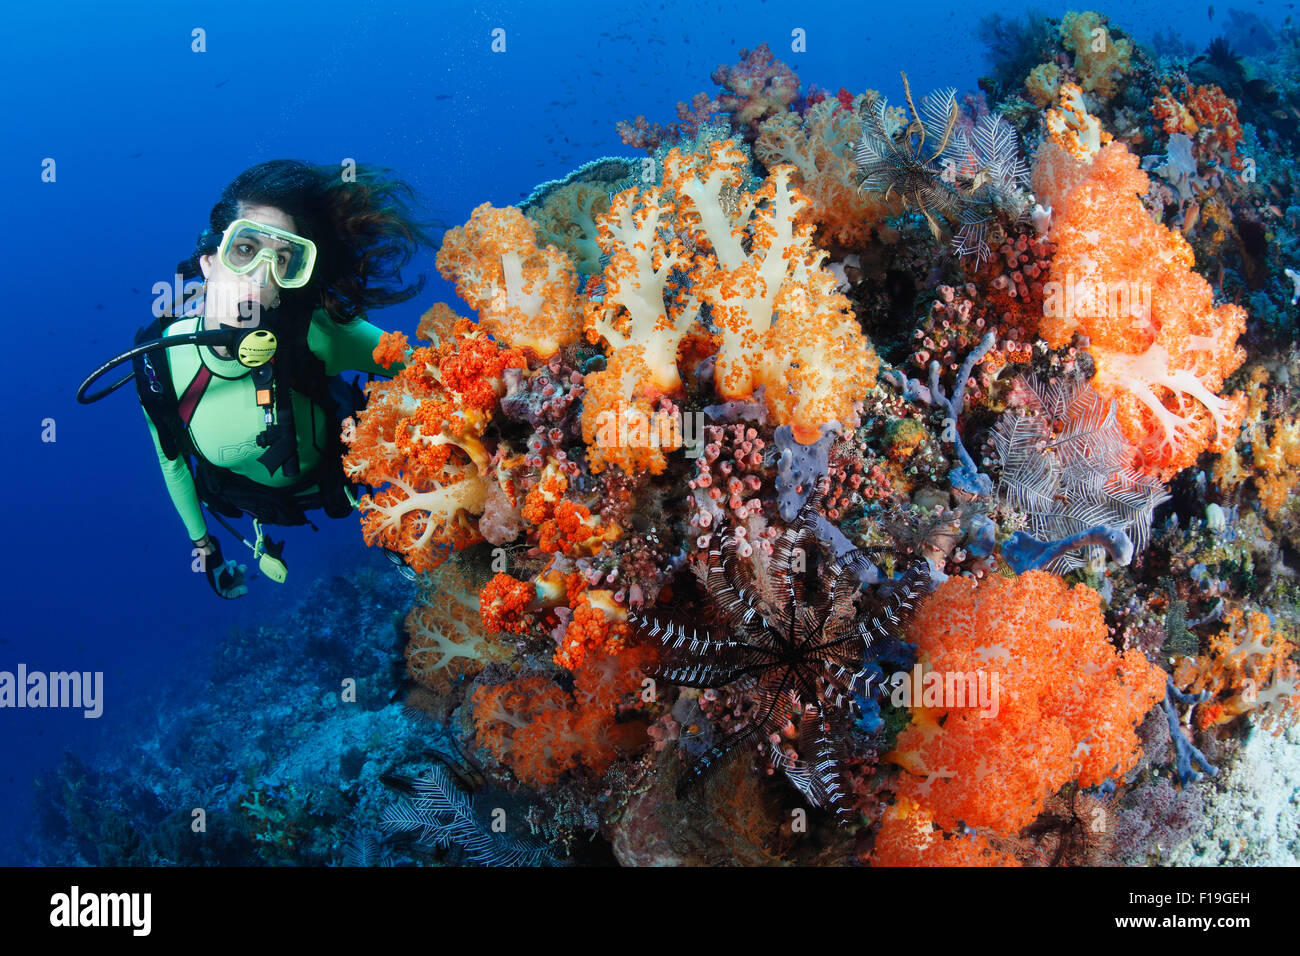 Px0203-D. scuba diver (modèle) parution admire les coraux mous (Dendronephthya sp.) qui se développent le long des récifs actuels ont balayé. Indonesi Banque D'Images